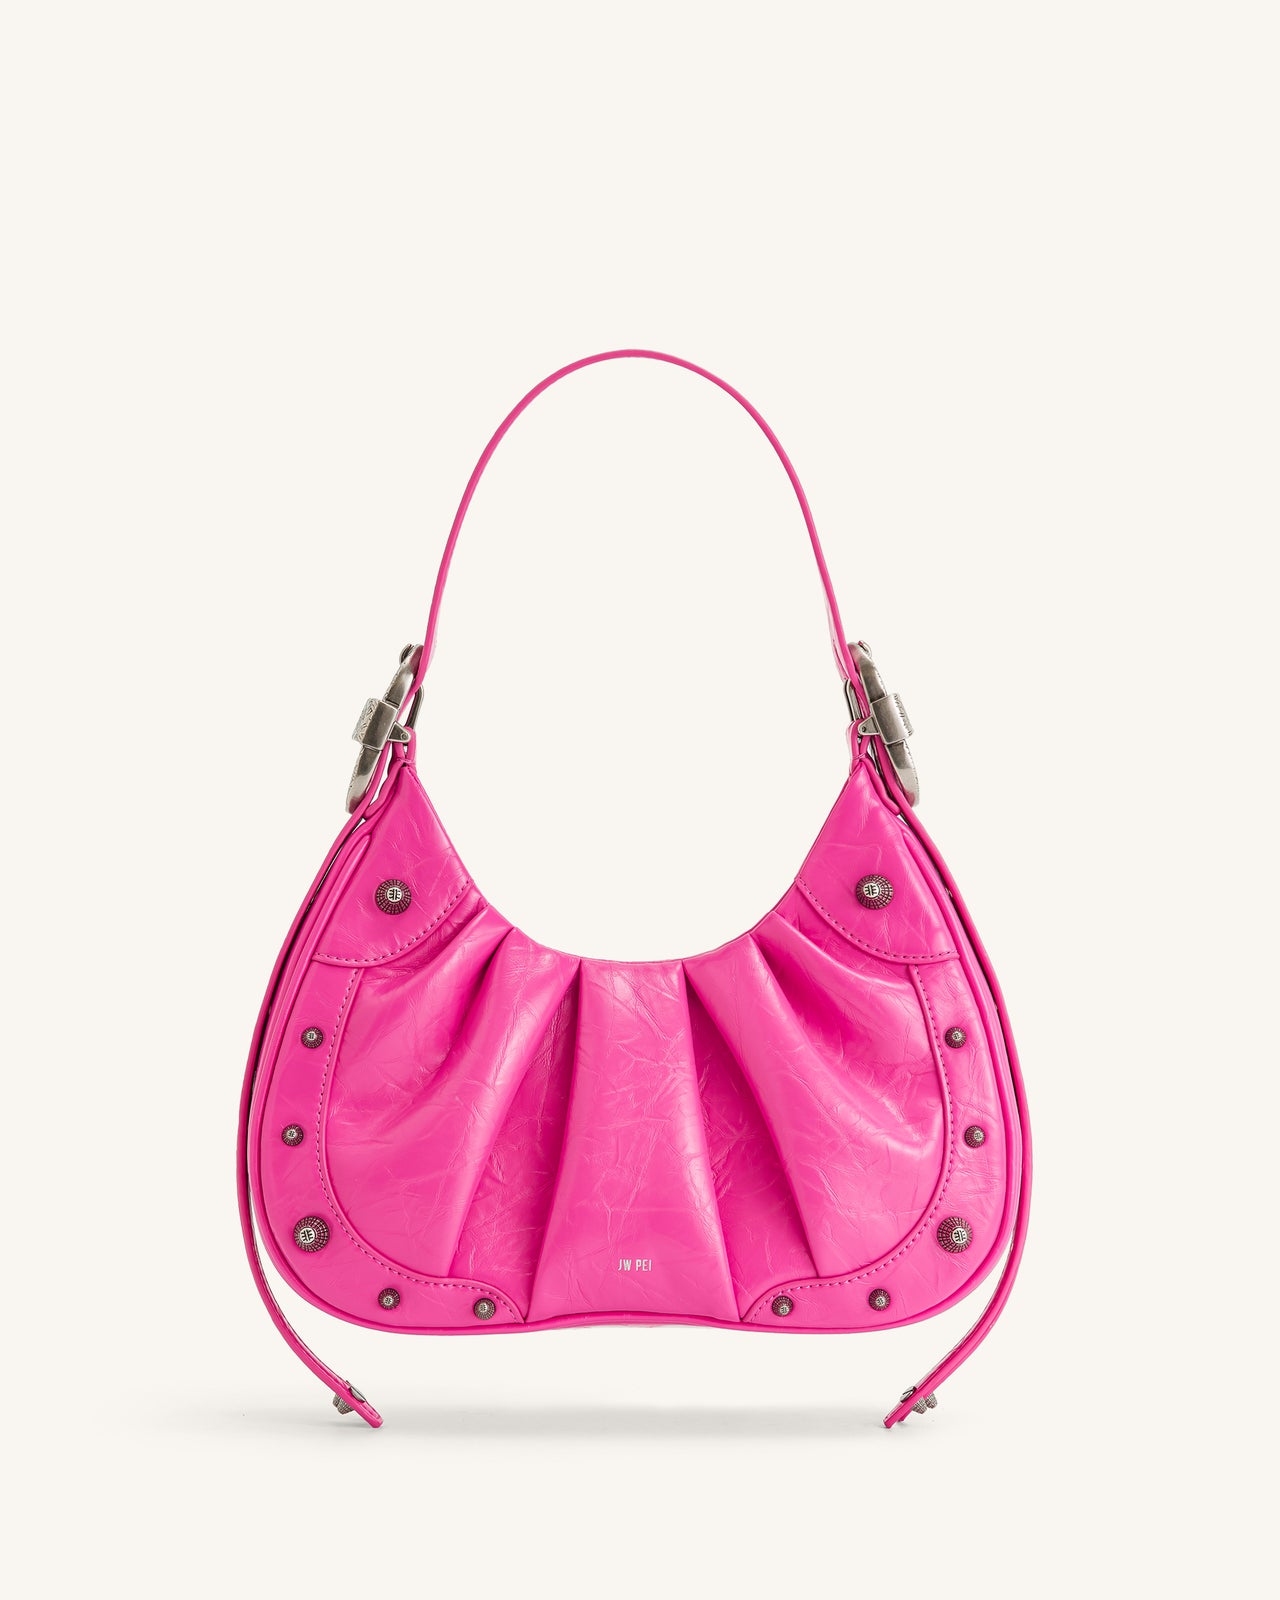 Jw PEI bag pink  Moda de ropa, Ropa de moda, Moda